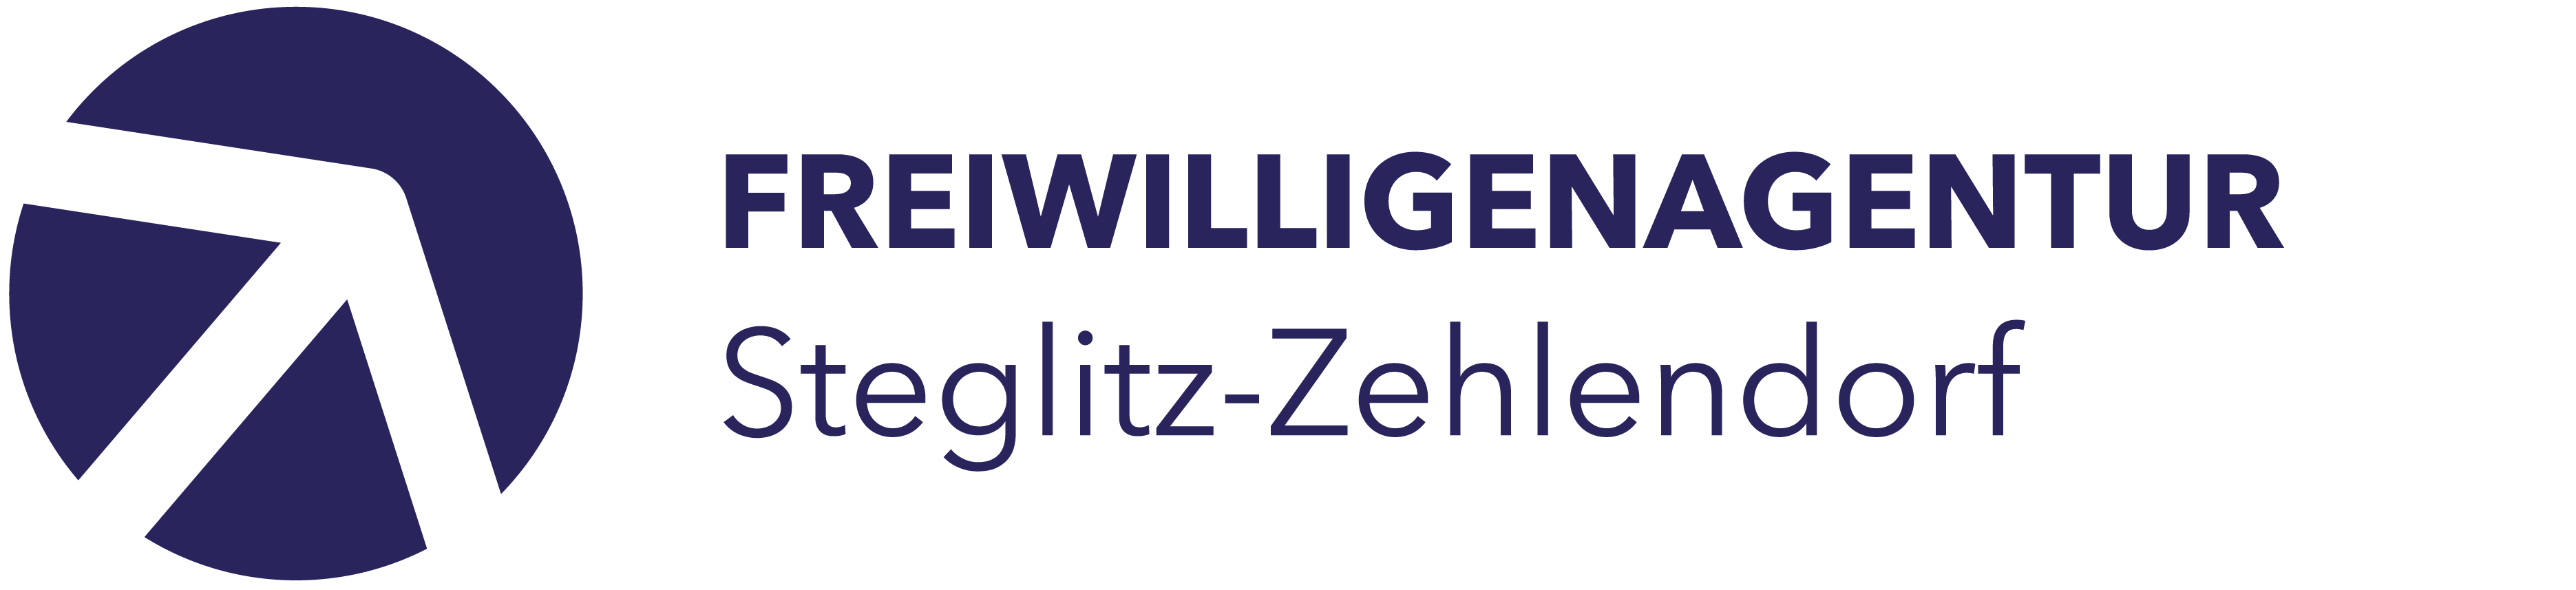 Freiwilligenagentur Steglitz-Zehlendorf